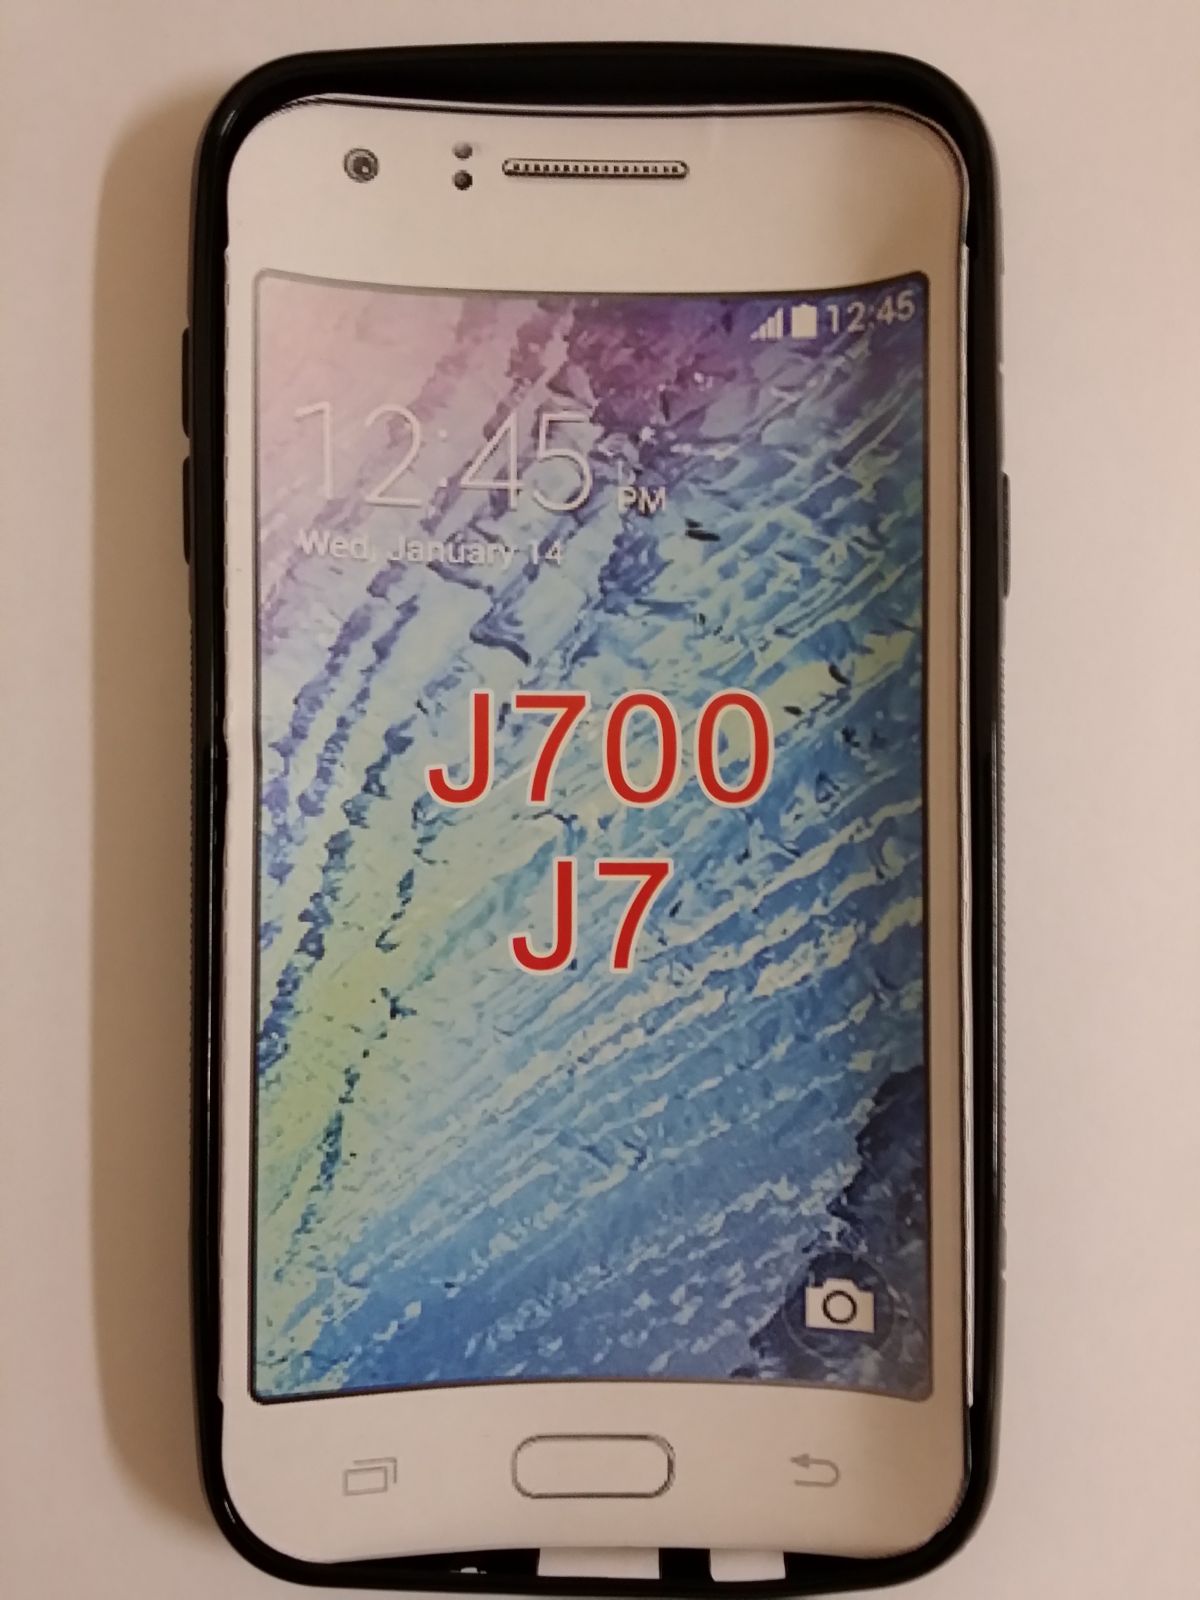 Pouzdro ForCell Lux S pro Samsung Galaxy J7/J700 černé